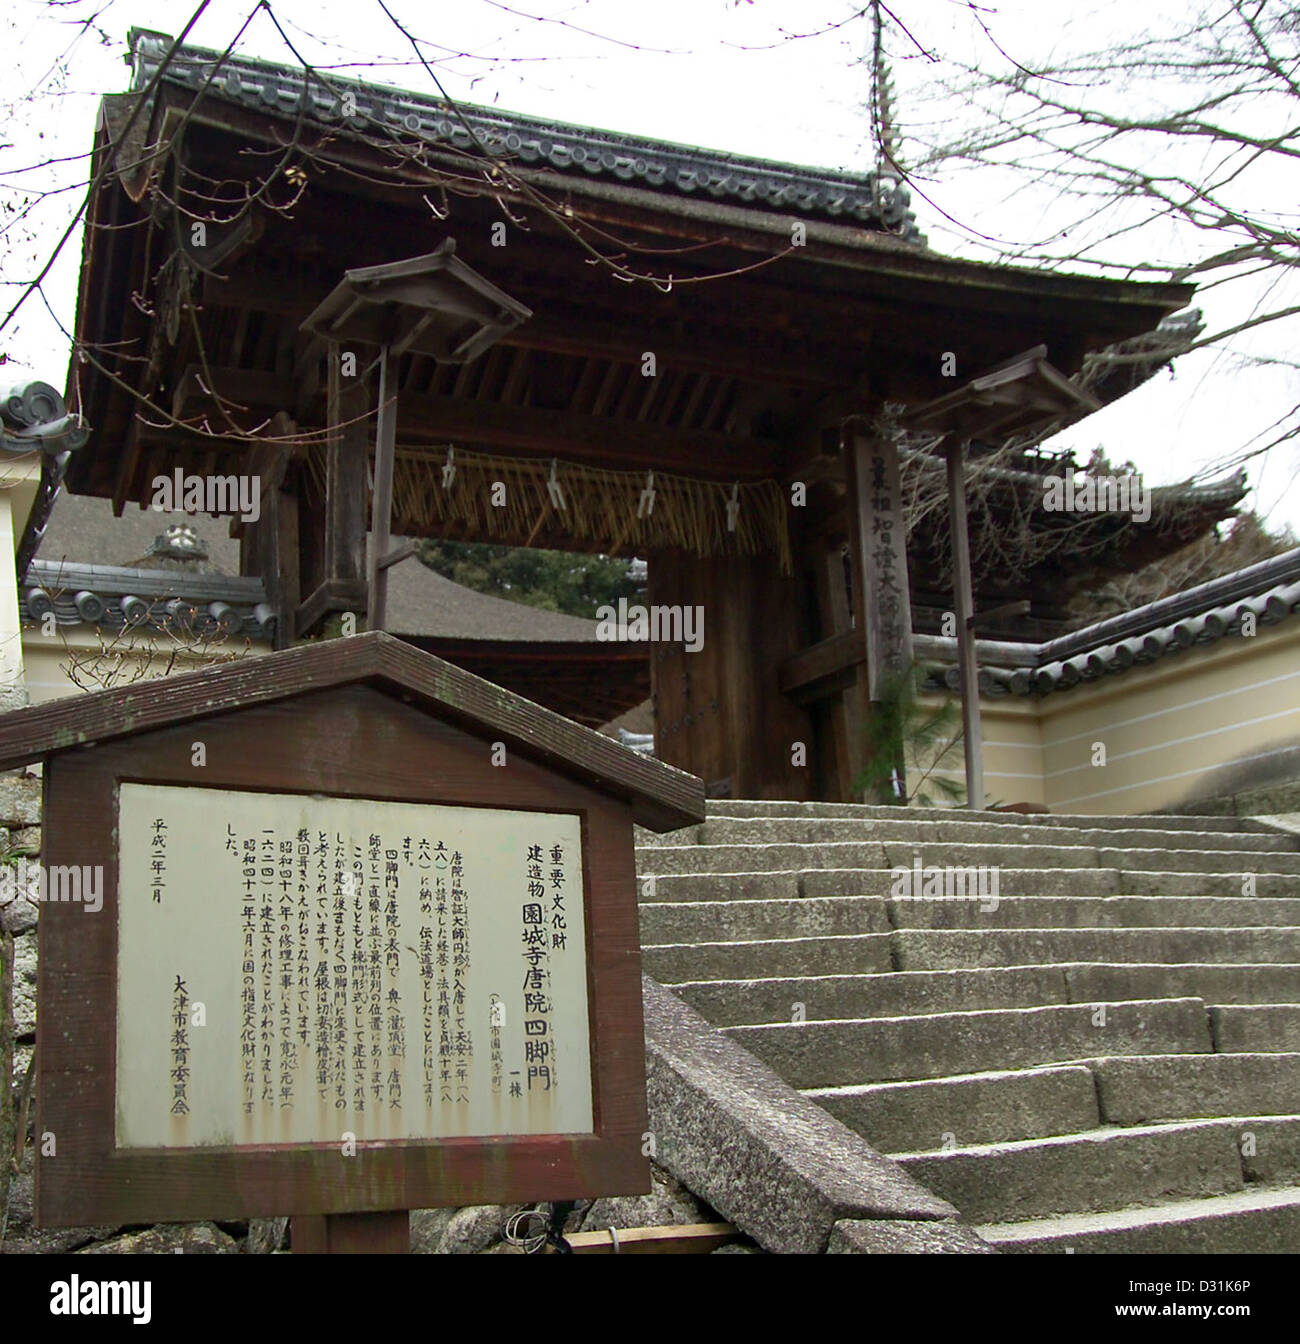 Dieses Tor ist die Shikyaku-Mon, dem vierbeinigen Tor mit Mii-Dera, ein buddhistischer Tempel in Otsu, Präfektur Shiga, Japan Stockfoto